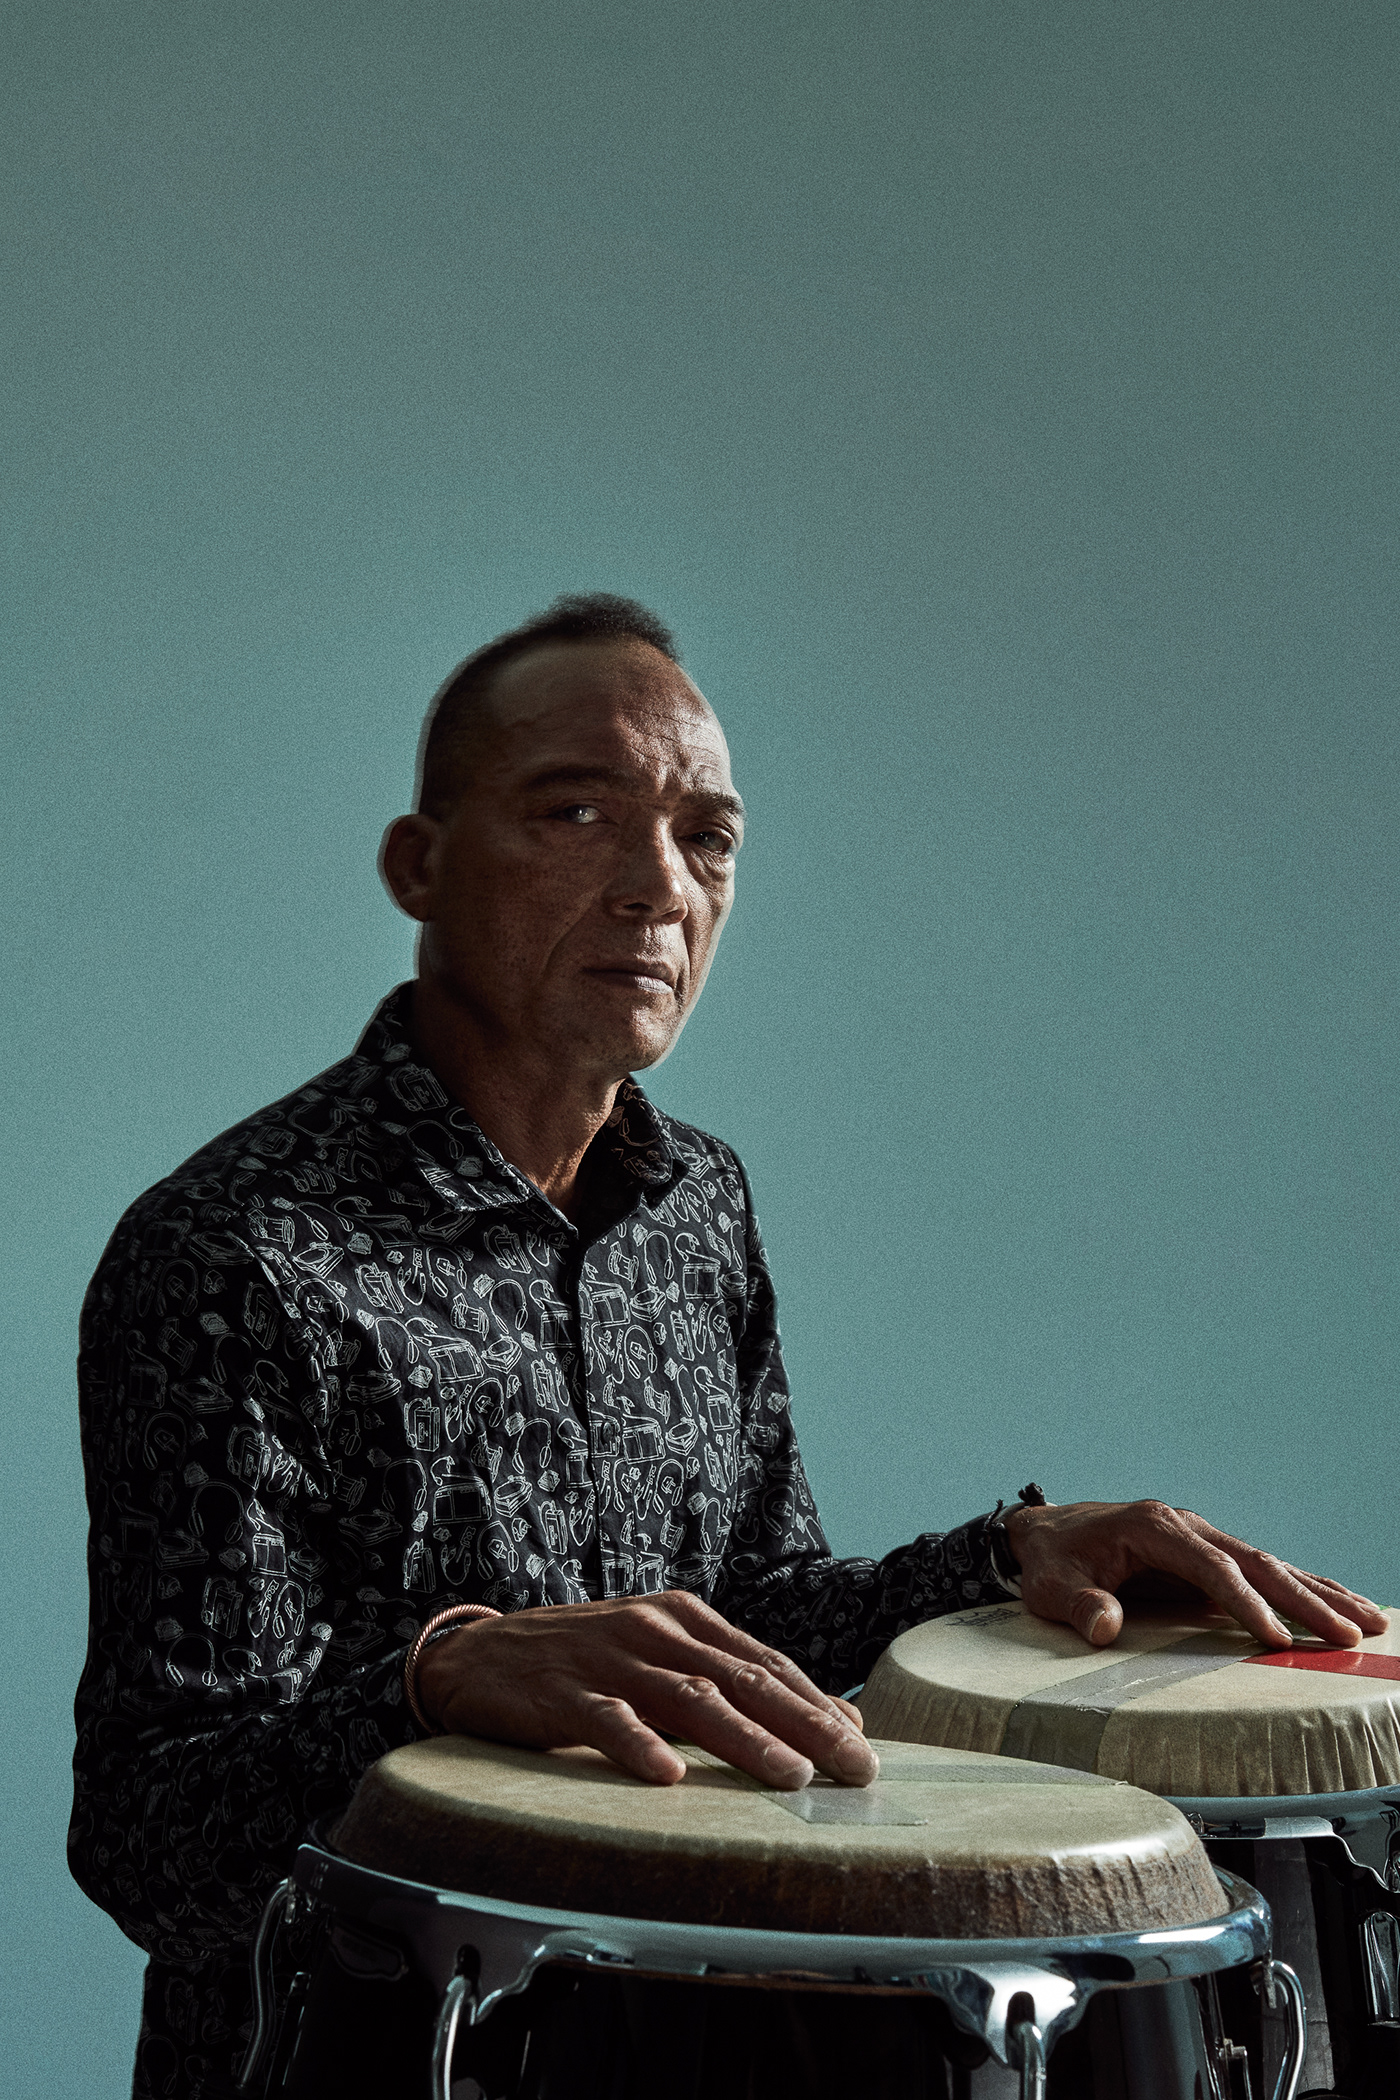 percussionist Dominican republic latino music exotic portrait creative musician rhythm tamtam